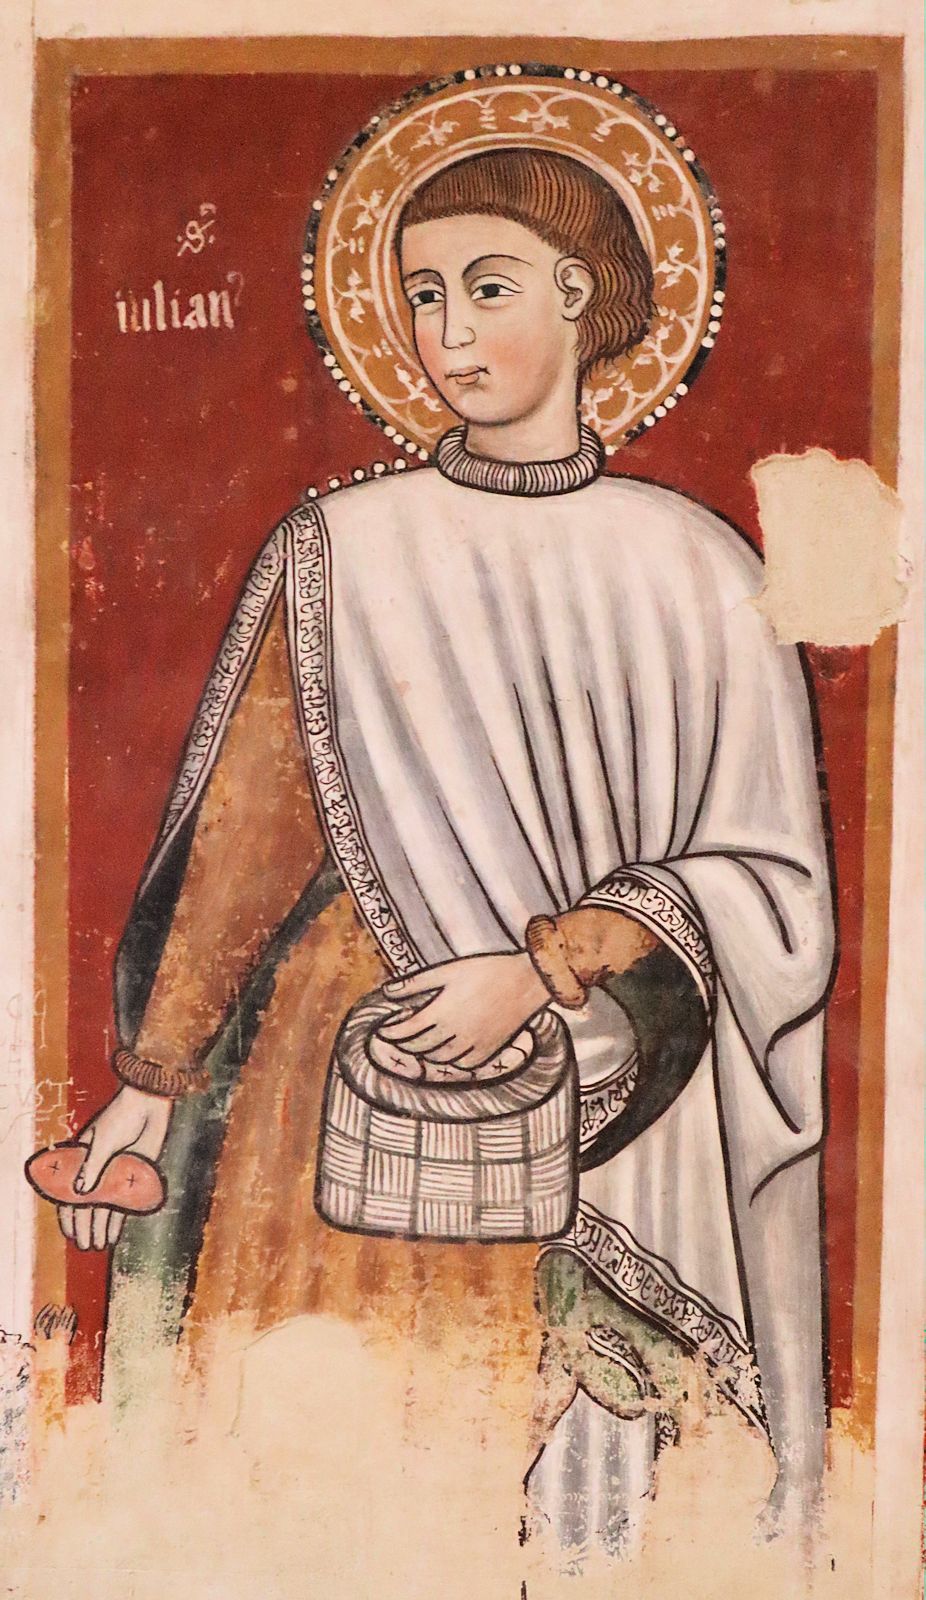 Rinaldo von Taranto (zugeschrieben): Fresko in der Kathedrale in Matera, um 1285